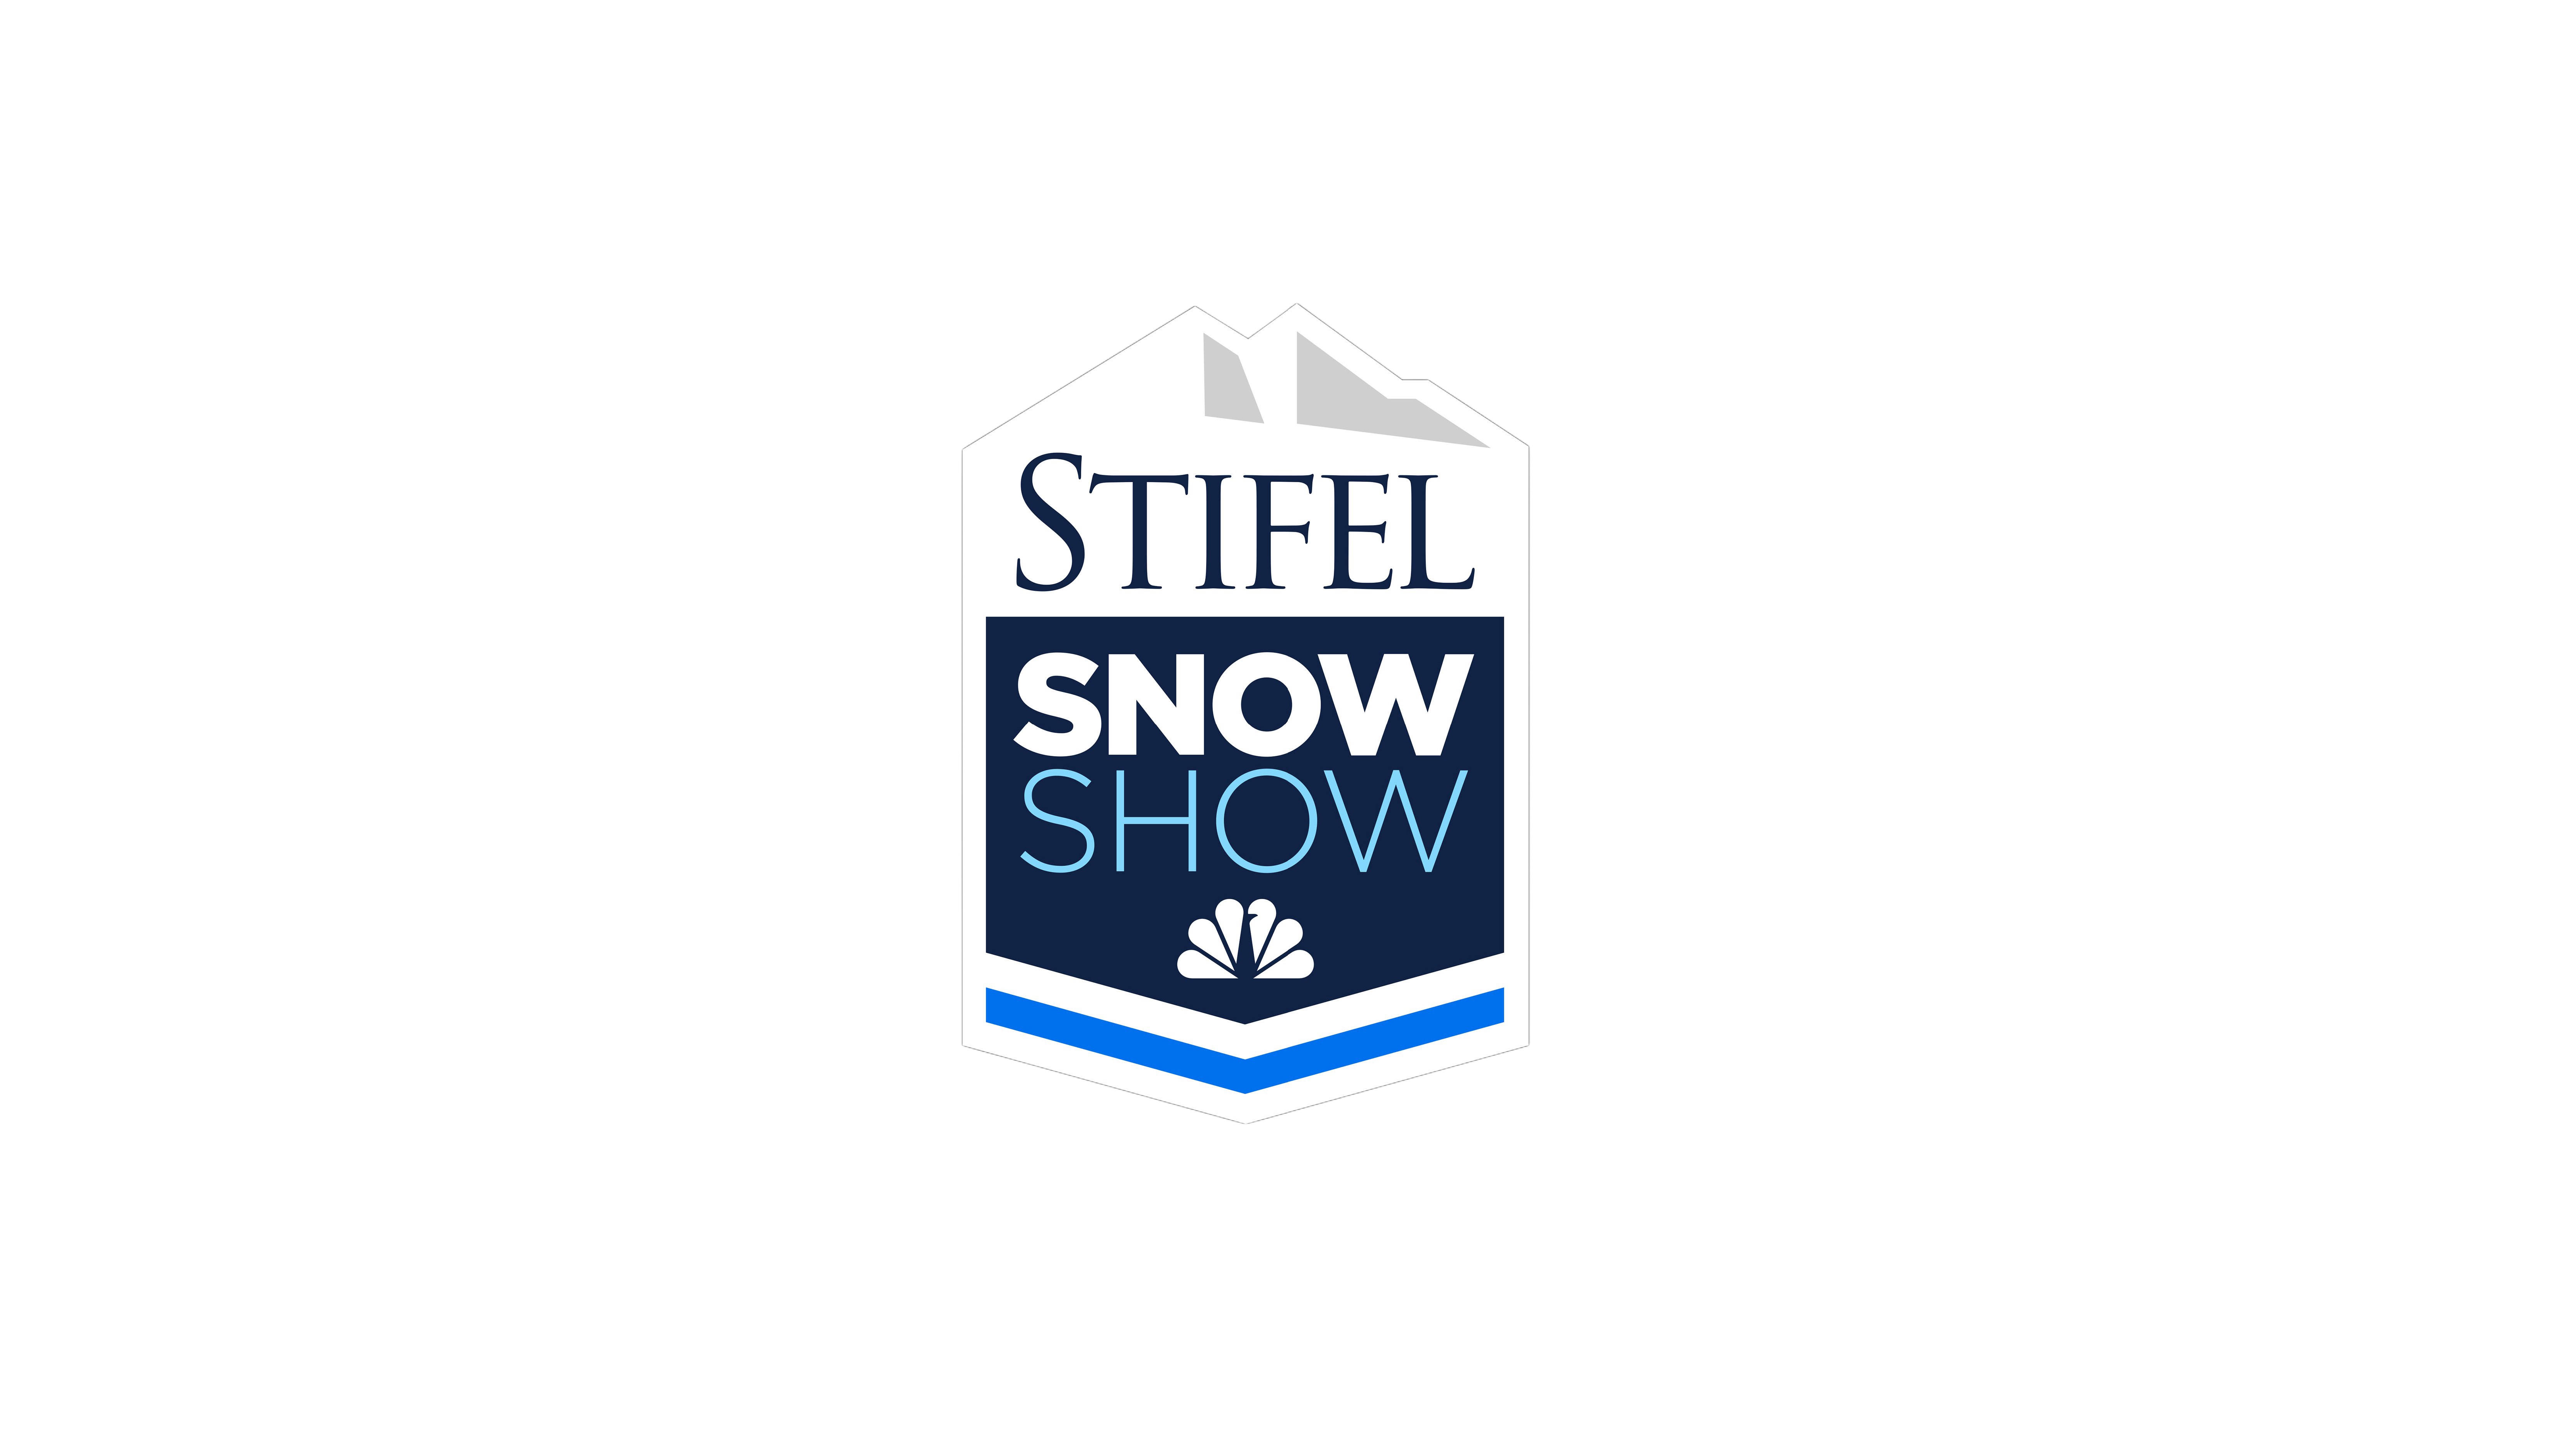 Stifel Snow Show